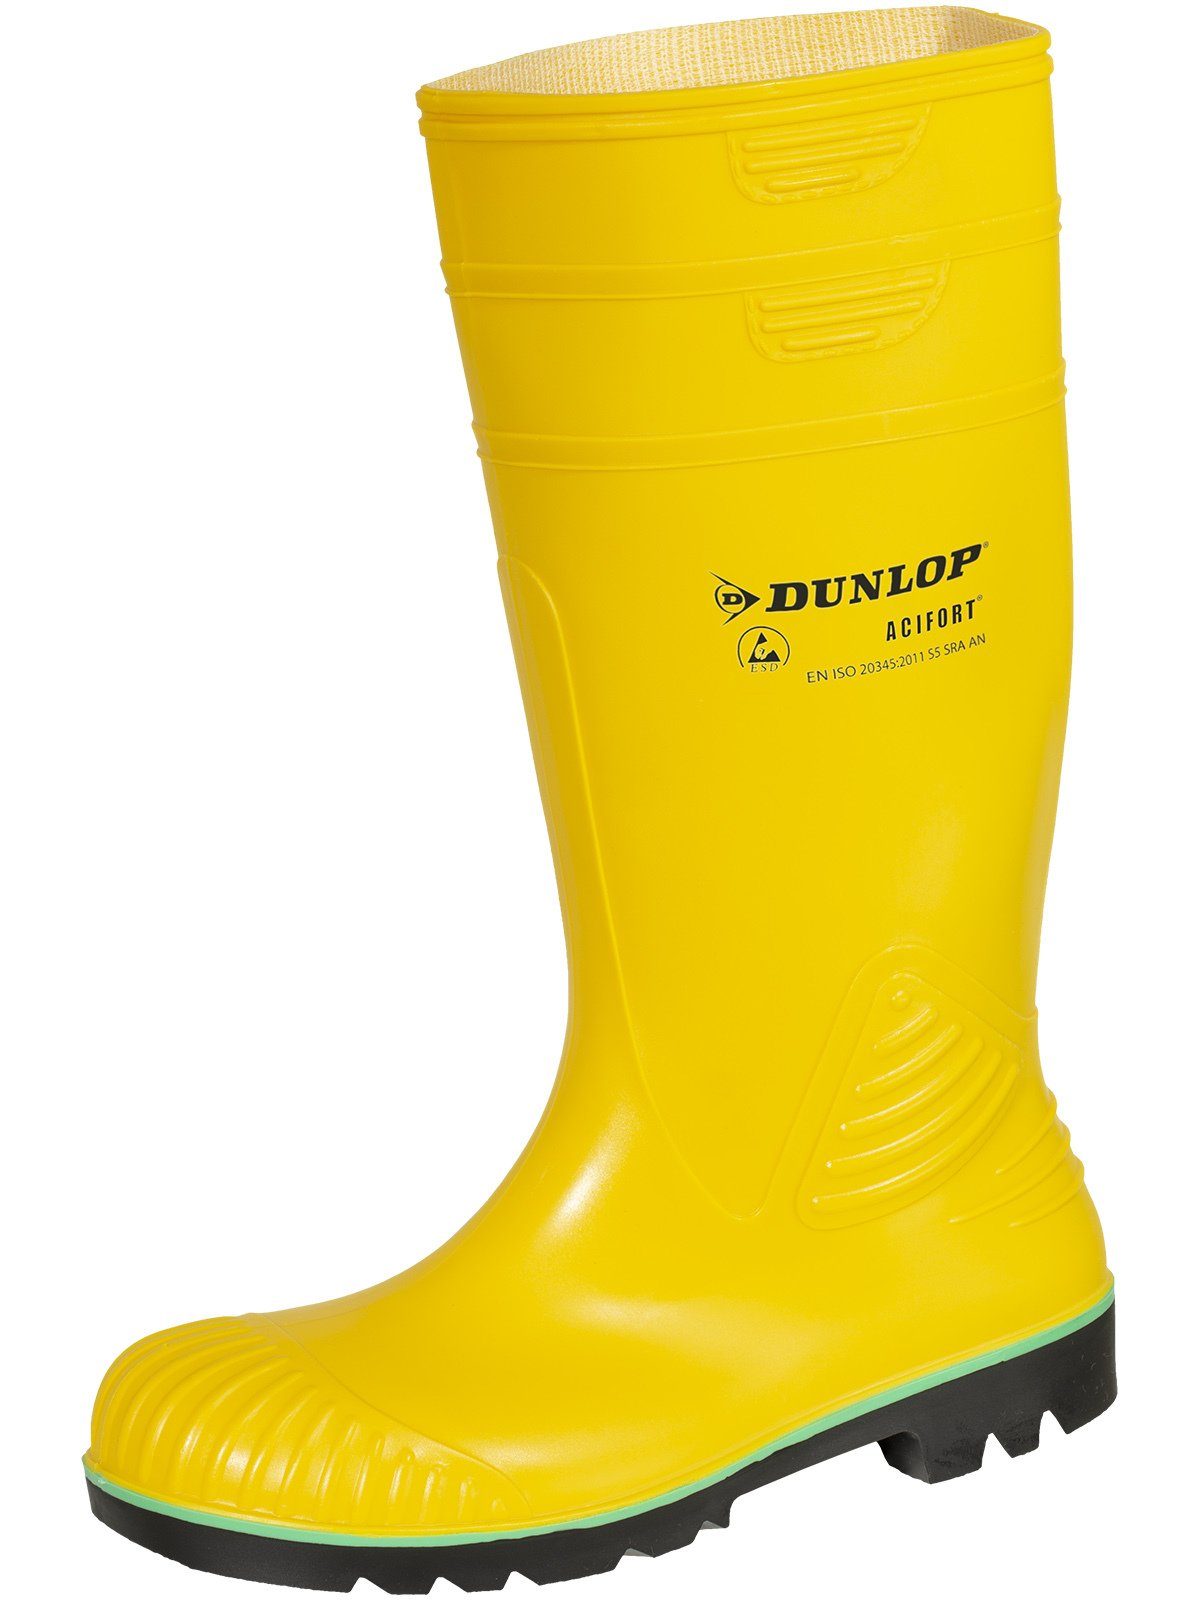 Acifort S5 gelb Dunlop_Workwear Stiefel ESD